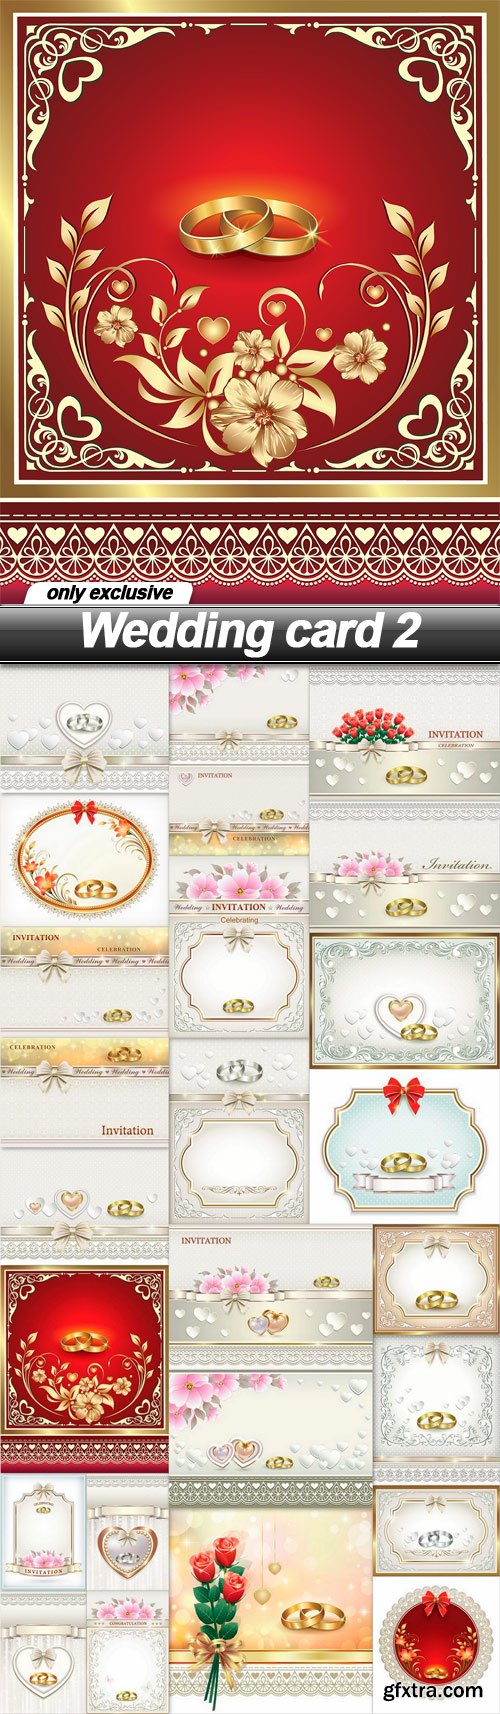 Wedding card 2 - 25 EPS